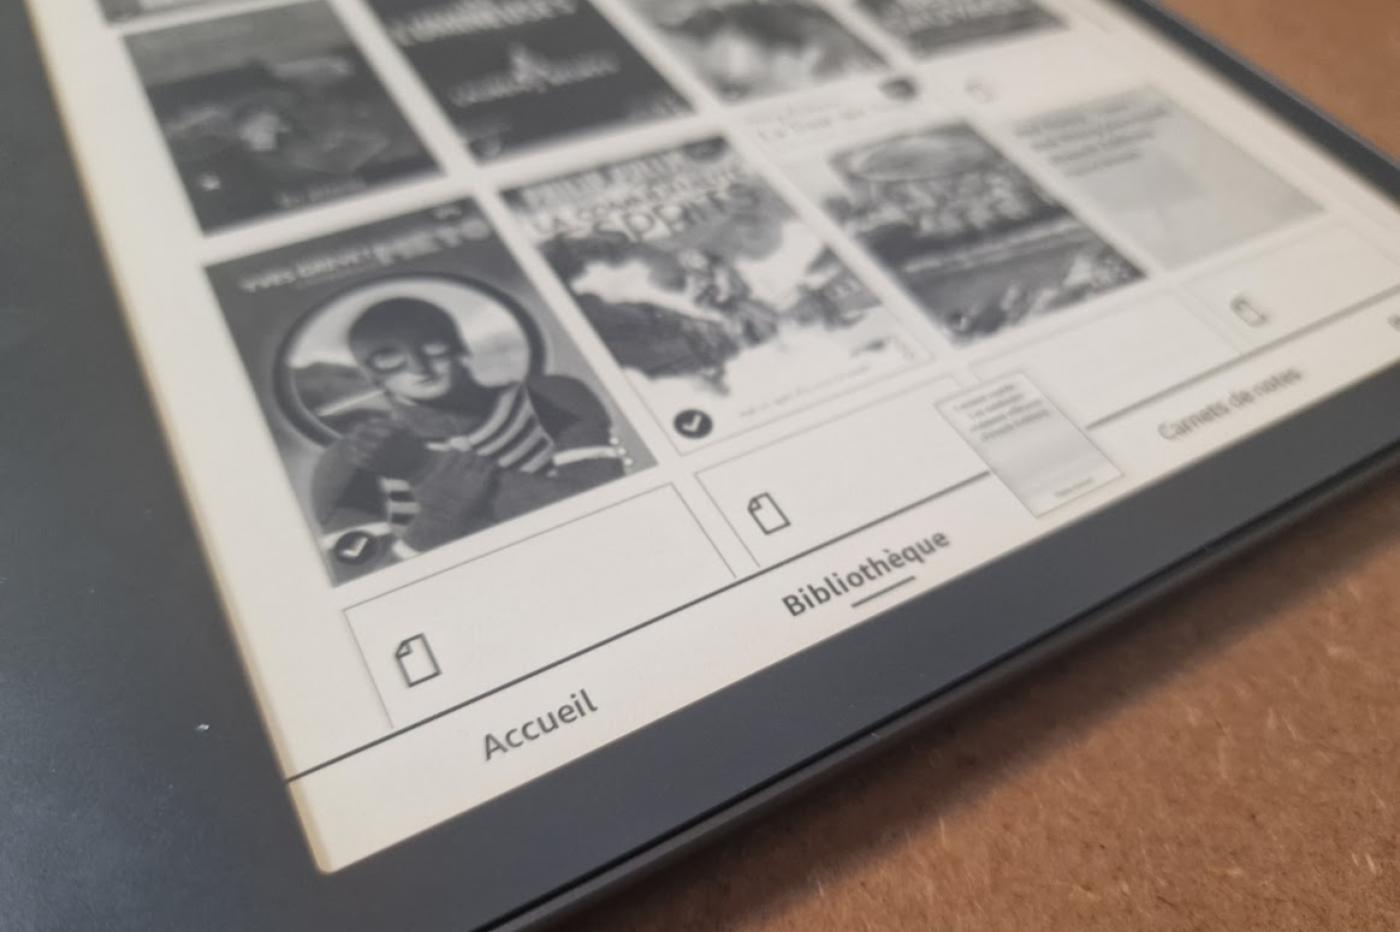 Test de la Kindle Scribe : la liseuse se met enfin à la page